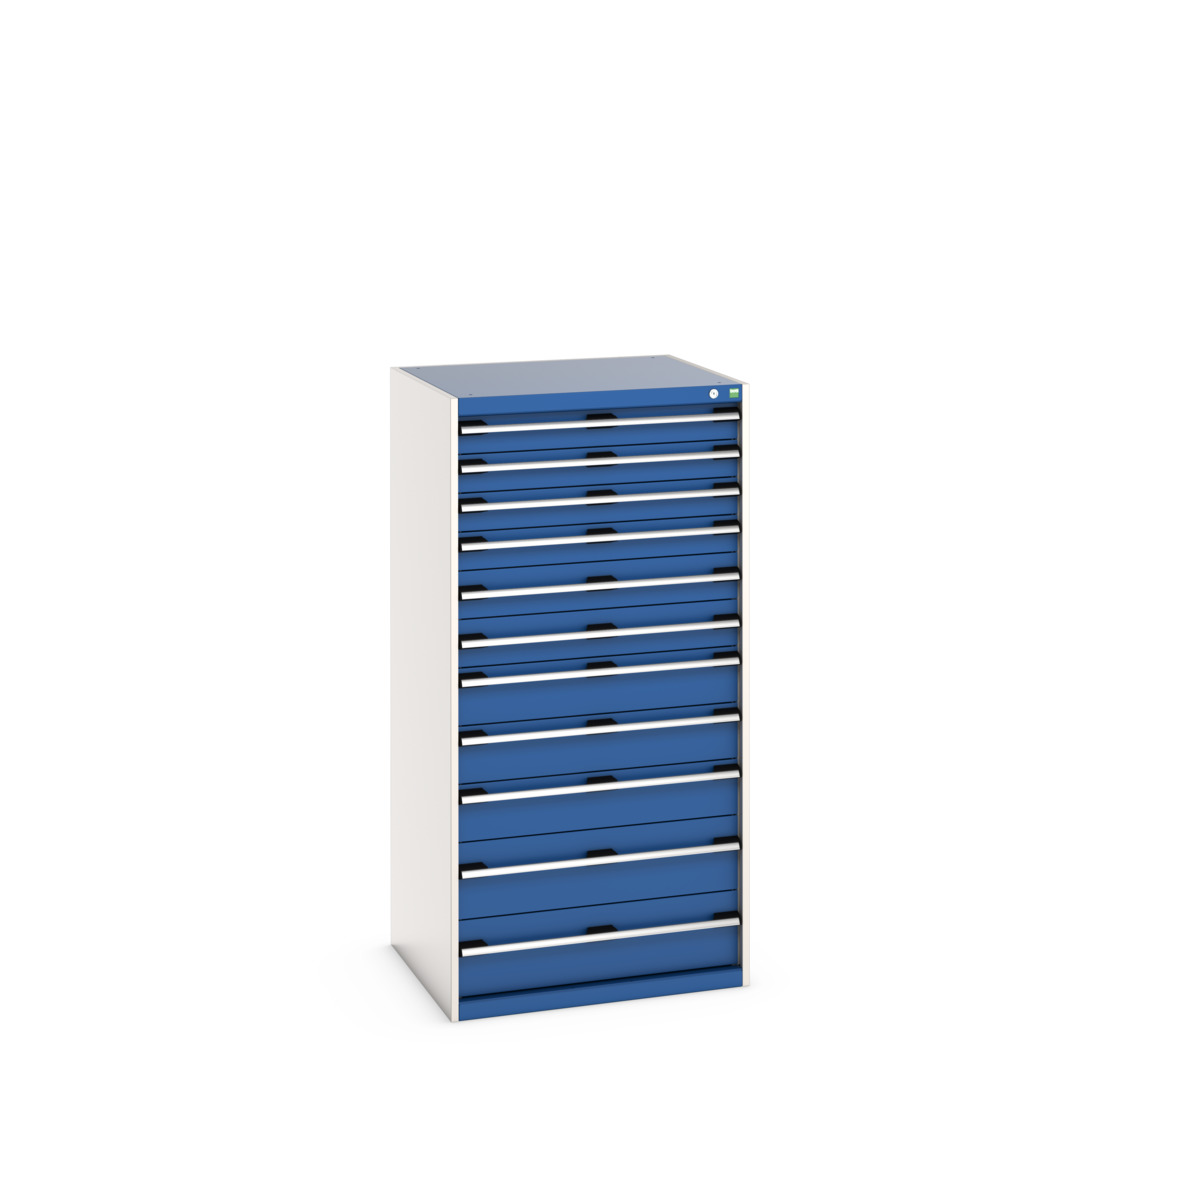 40028041.11V - cubio drawer cabinet